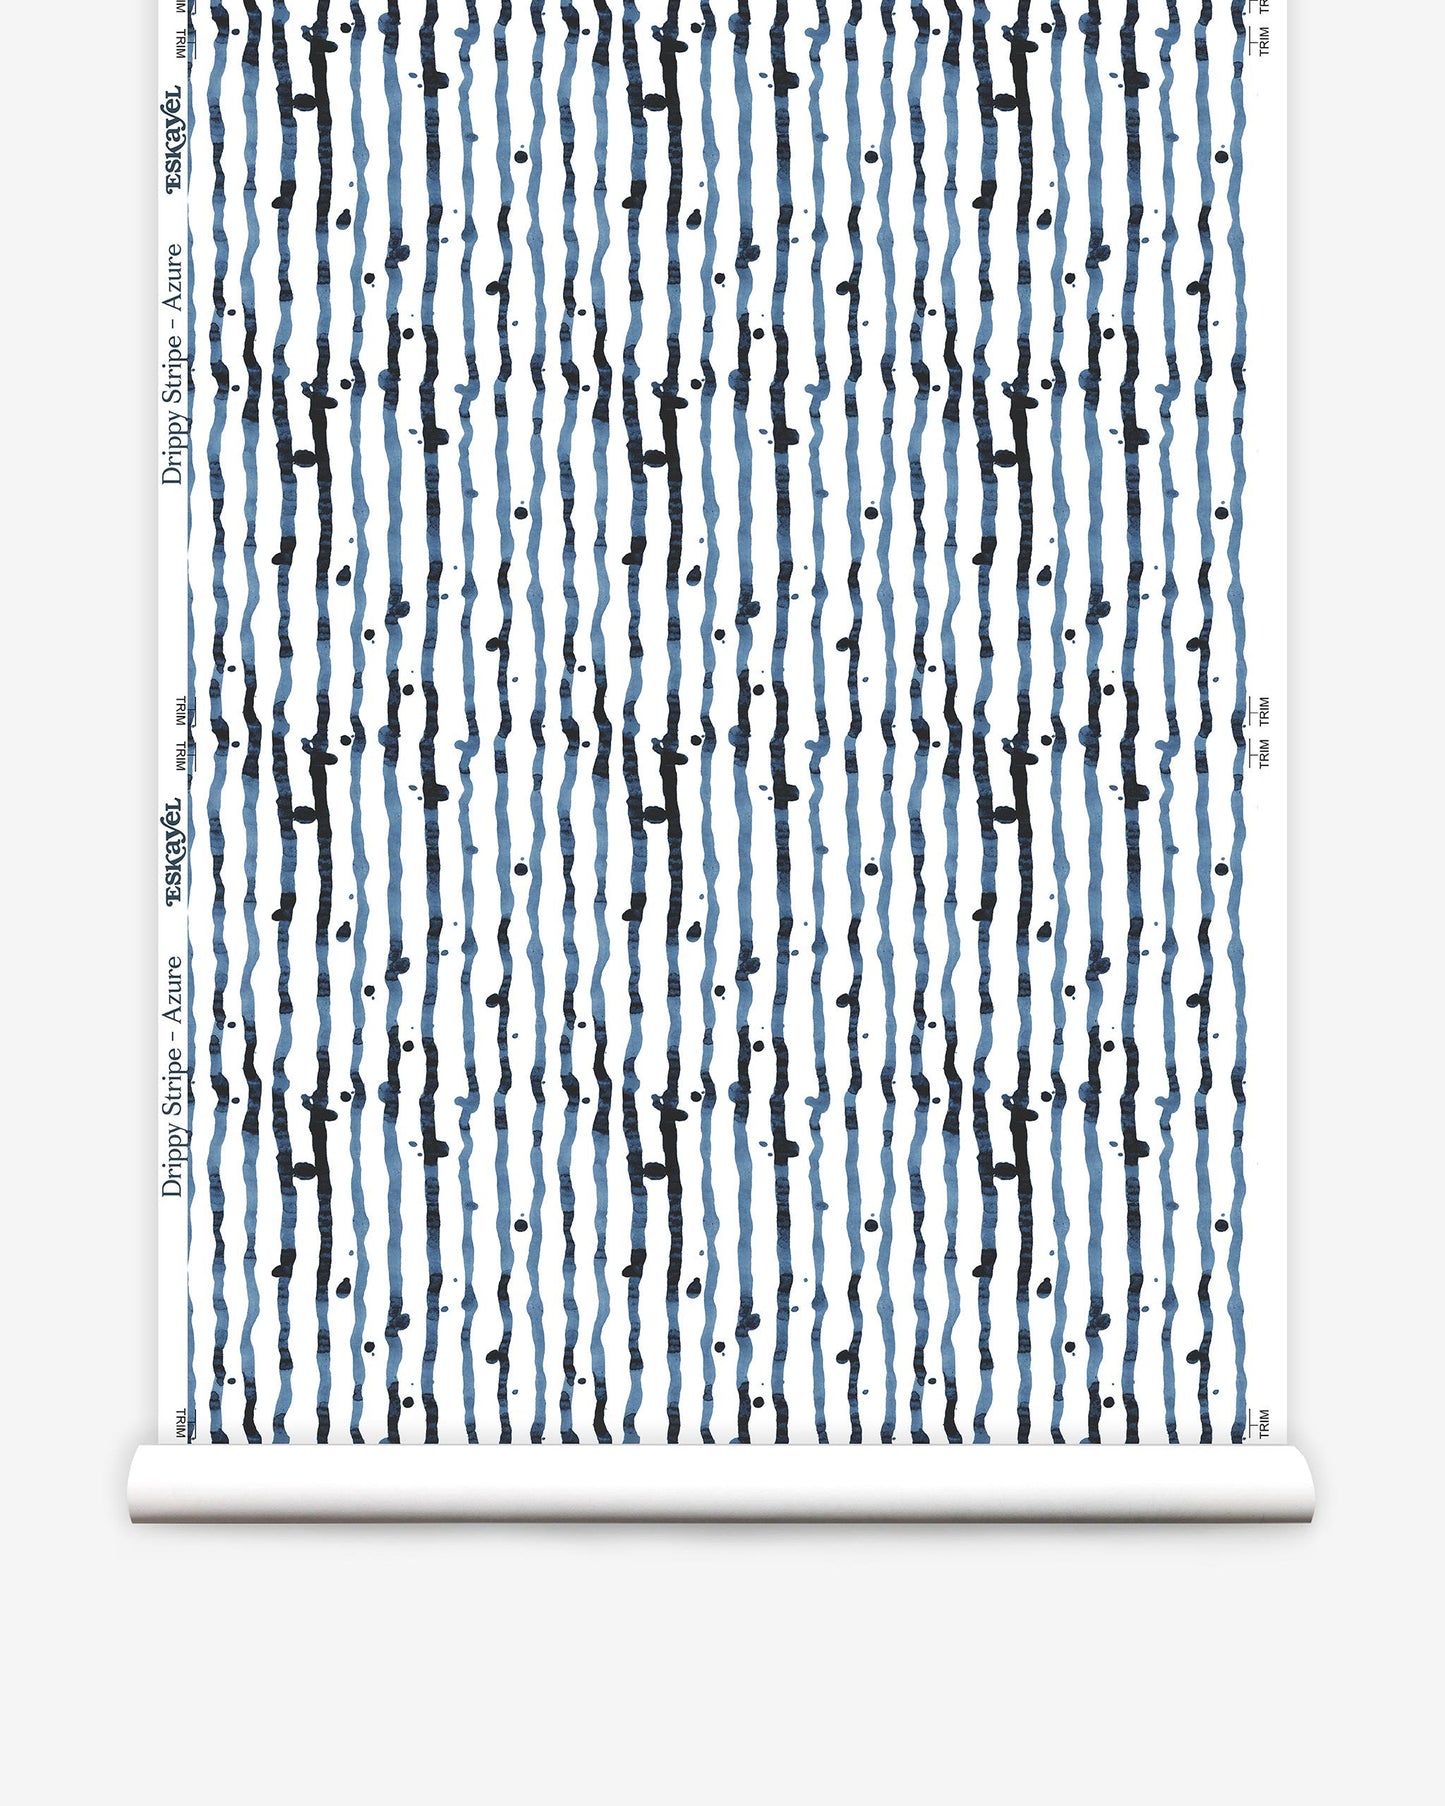 A Drippy Stripe Wallpaper||Azure pattern on a roll of paper.